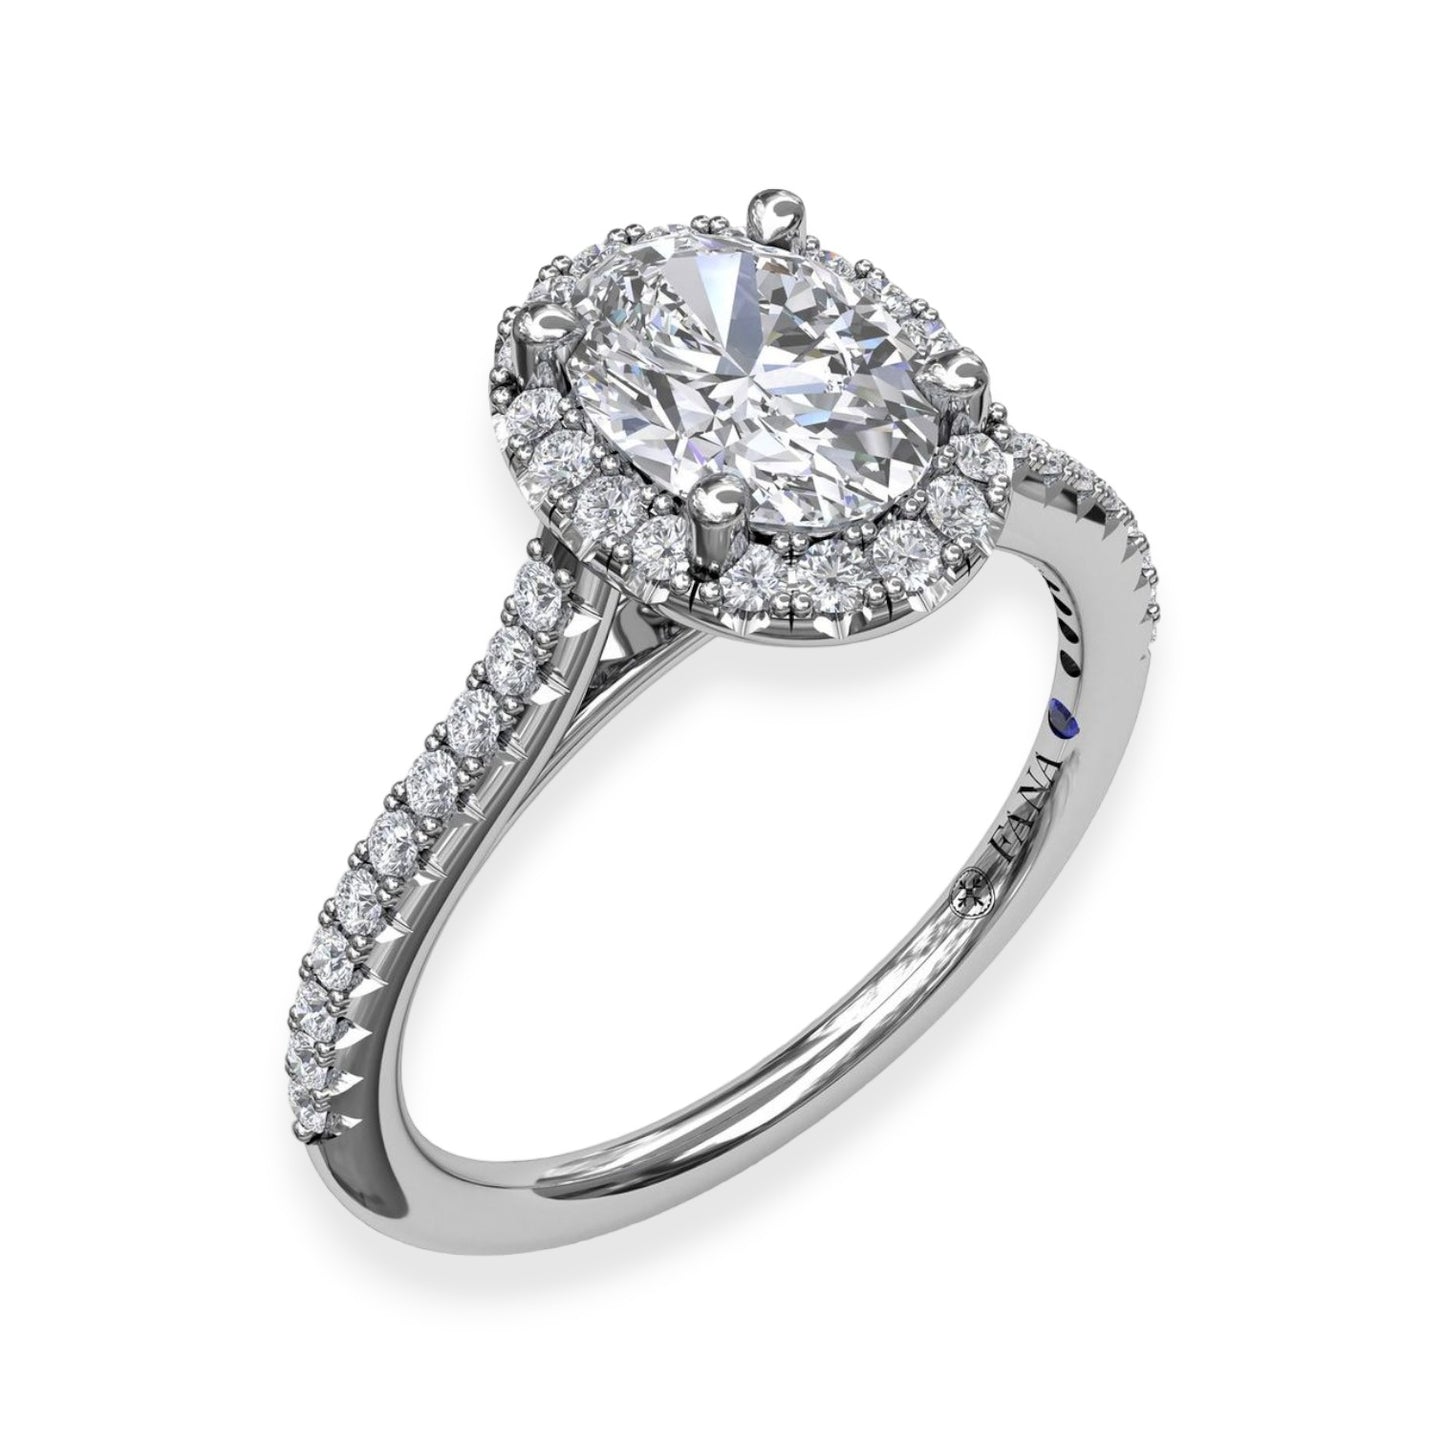 White Polished Gold Halo Engagement Ring